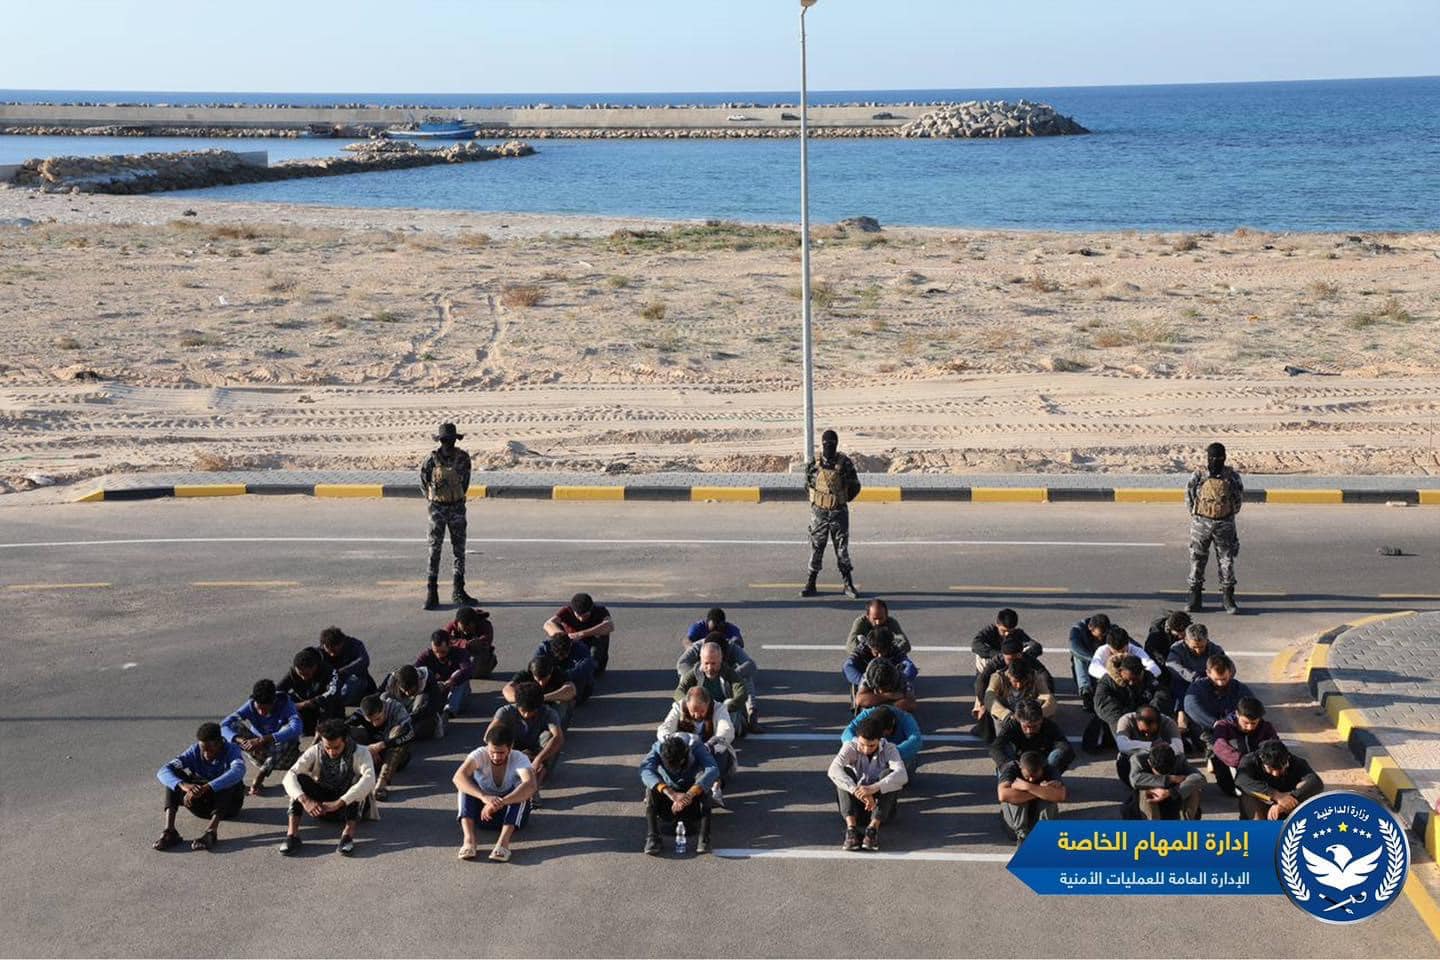 الإدارة العامة للعمليات الأمنية: إحباط محاولة هجرة غير شرعية وضبط 40 مهاجرًا شرق طرابلس